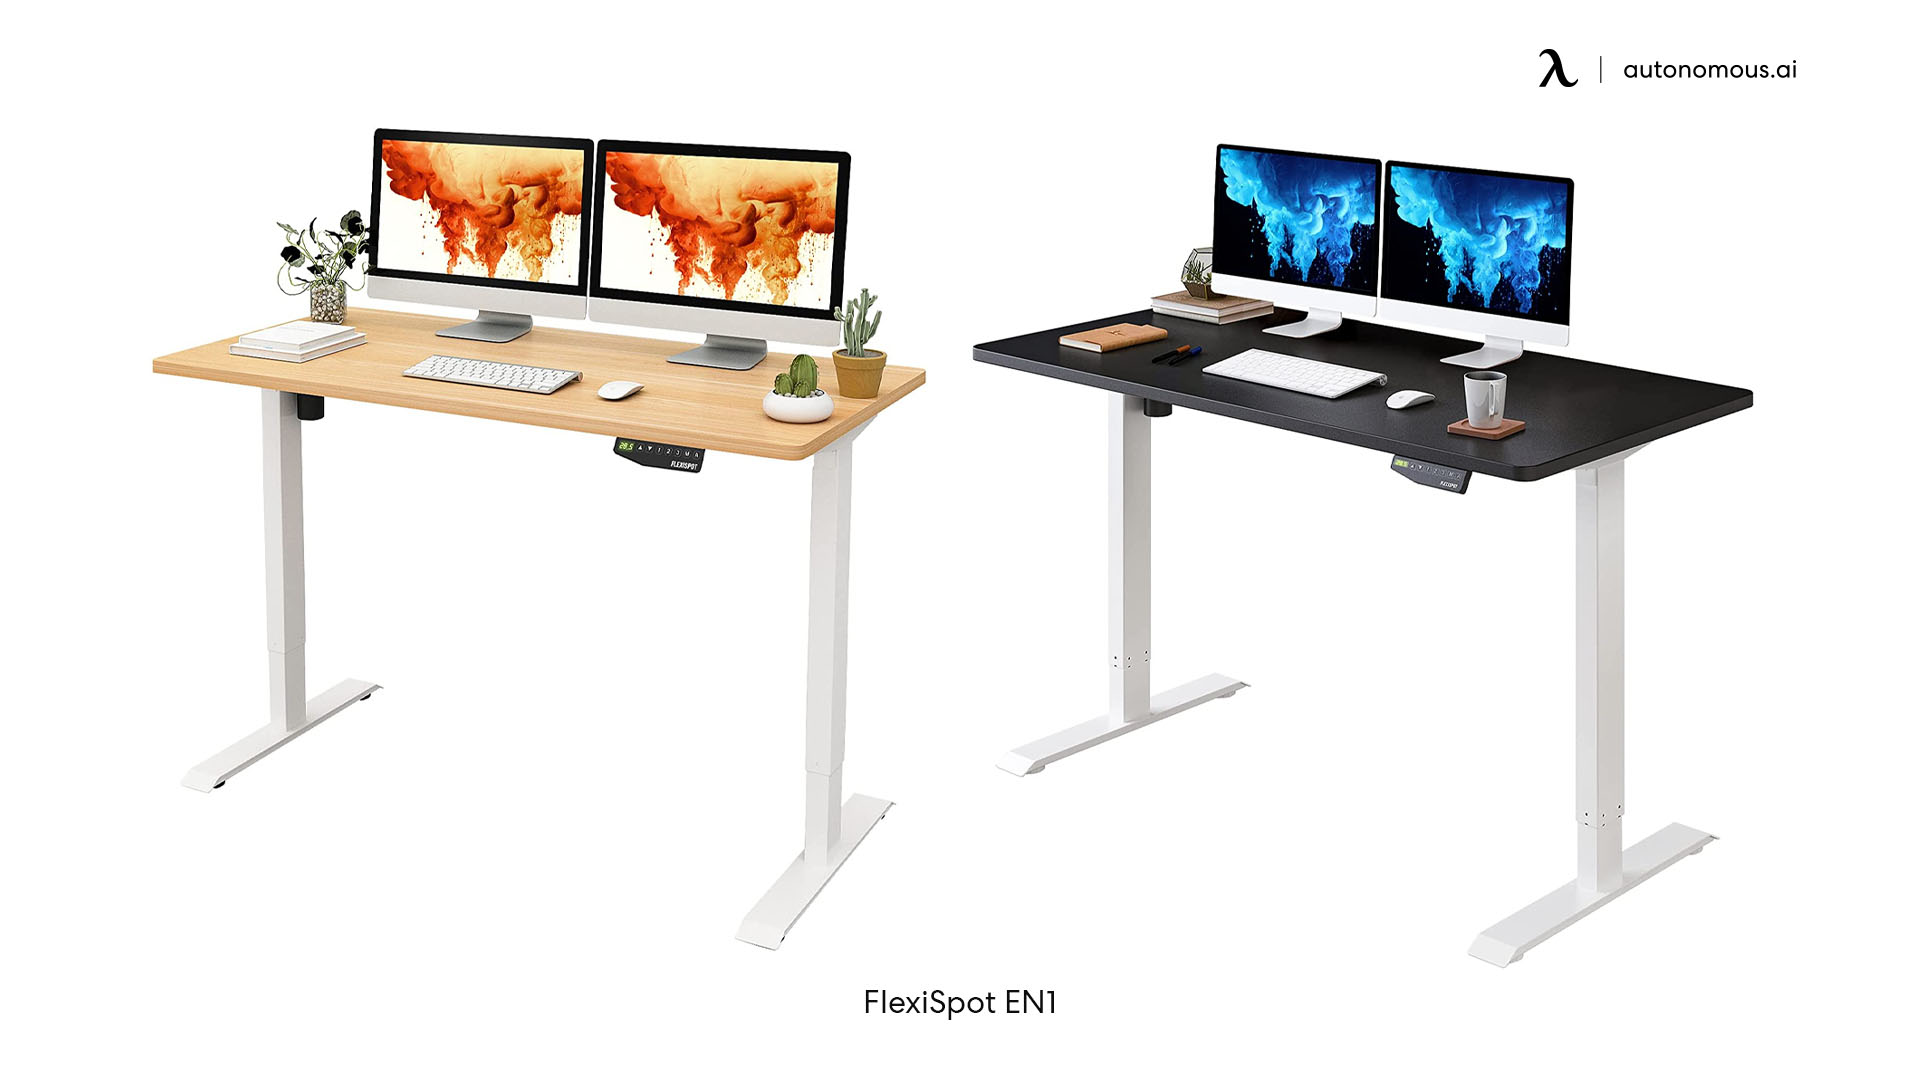 EN1 tech desk by Flexispot